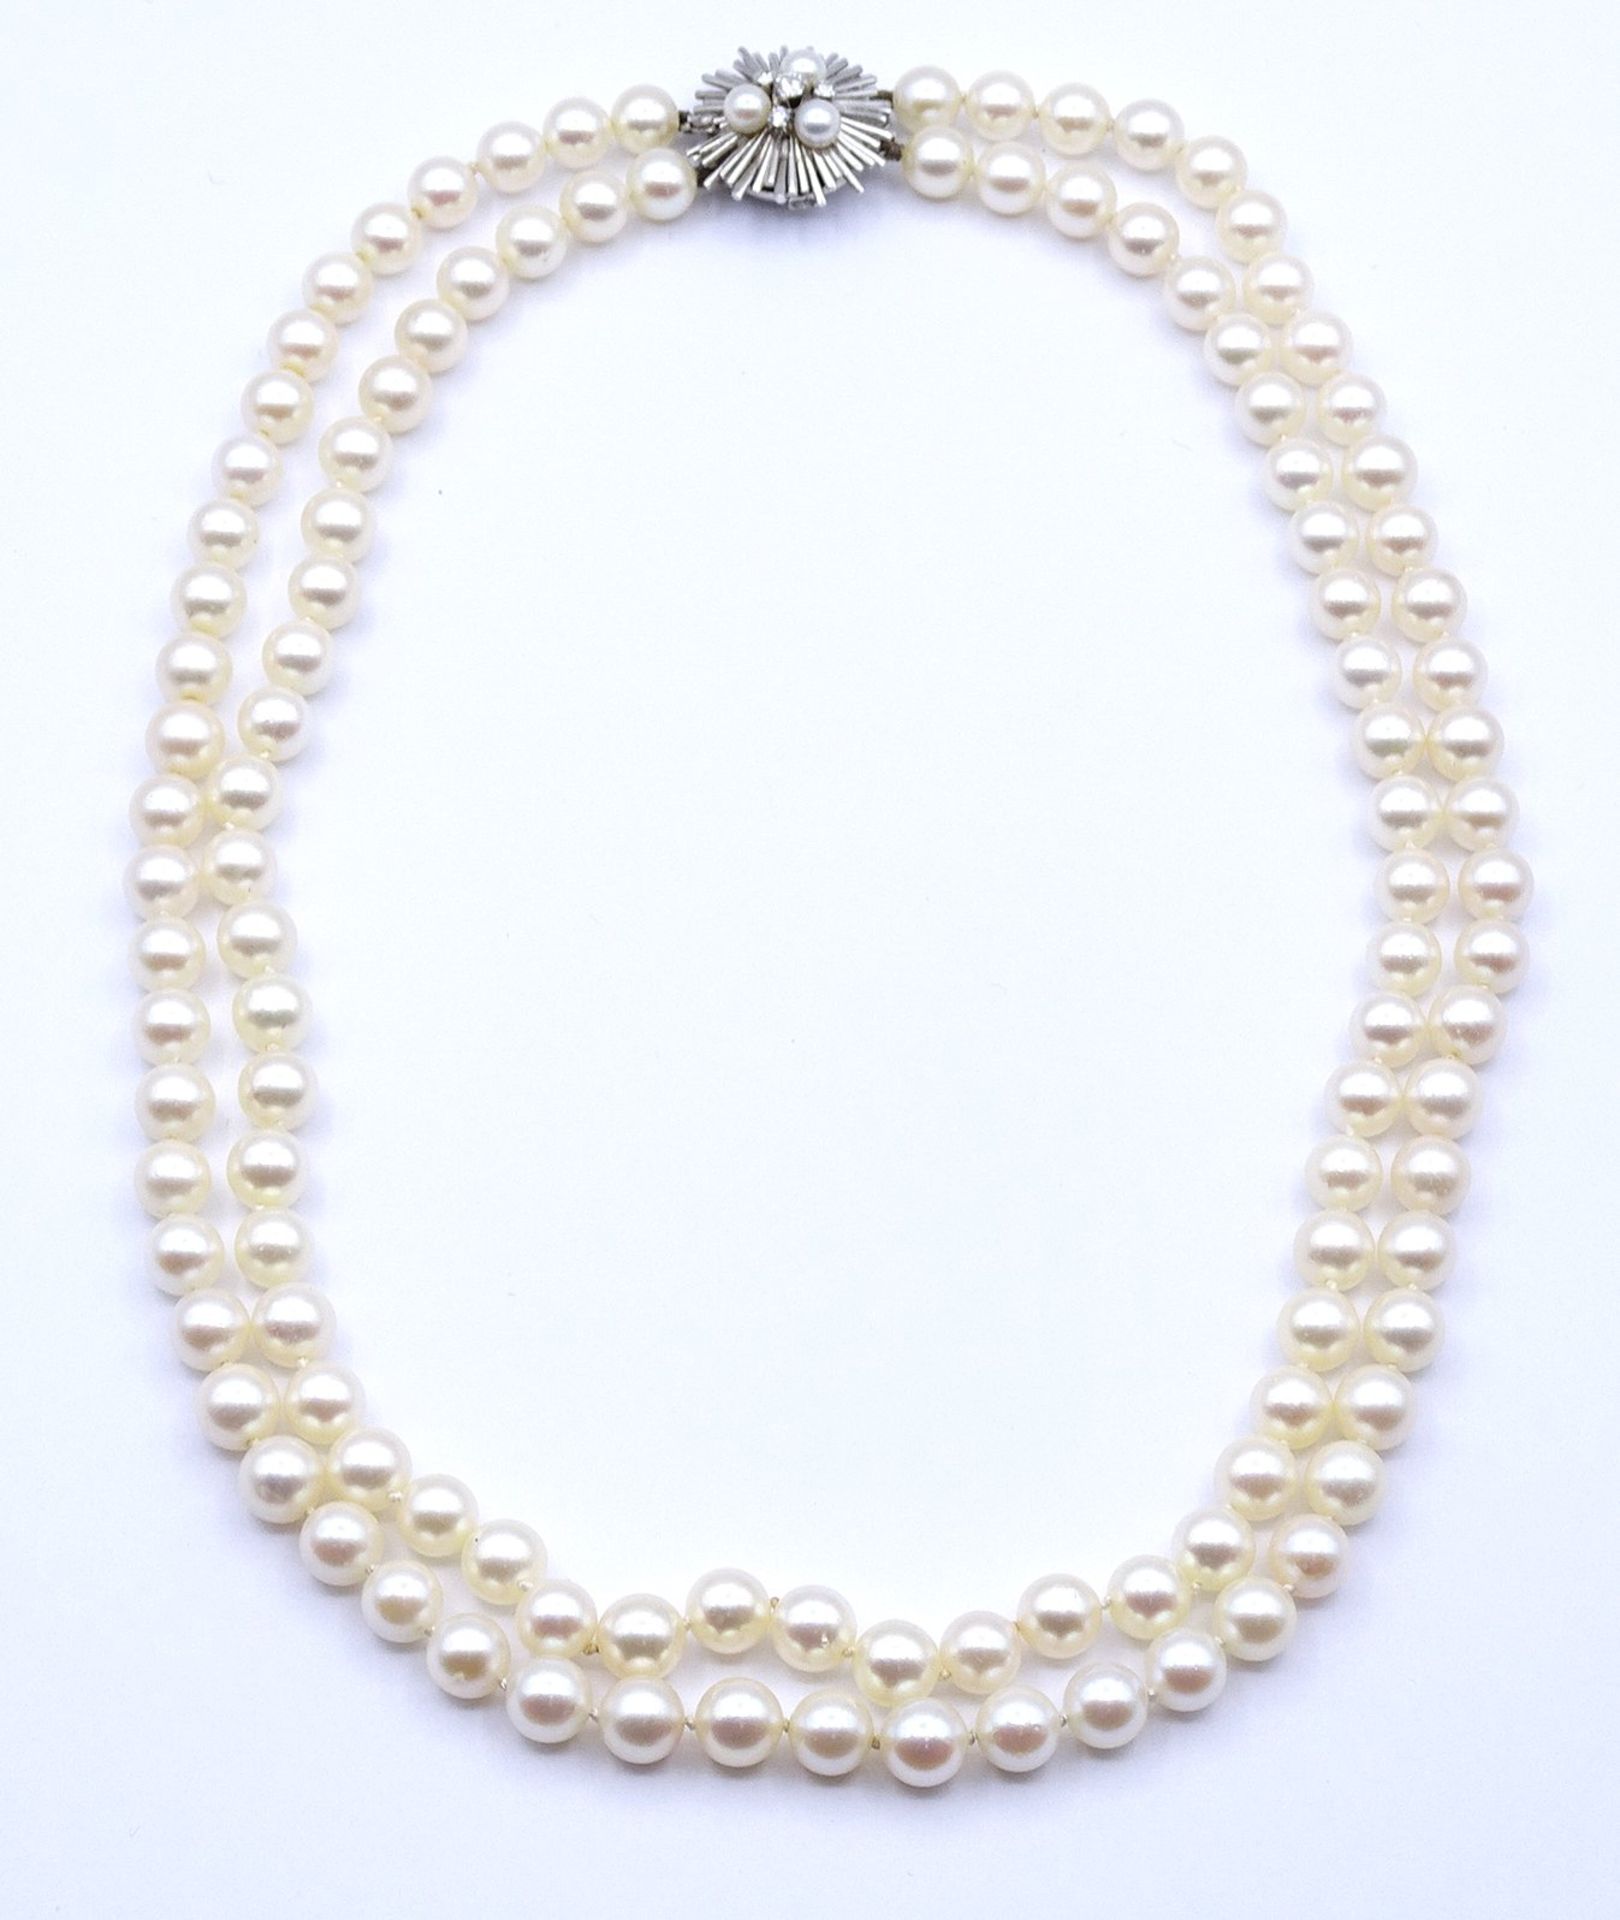 2-reihige Perlen Halskette mit Weißgoldverschluss 750/000, Verschluss mit 3 Perlen und 4 Brillanten - Image 6 of 11